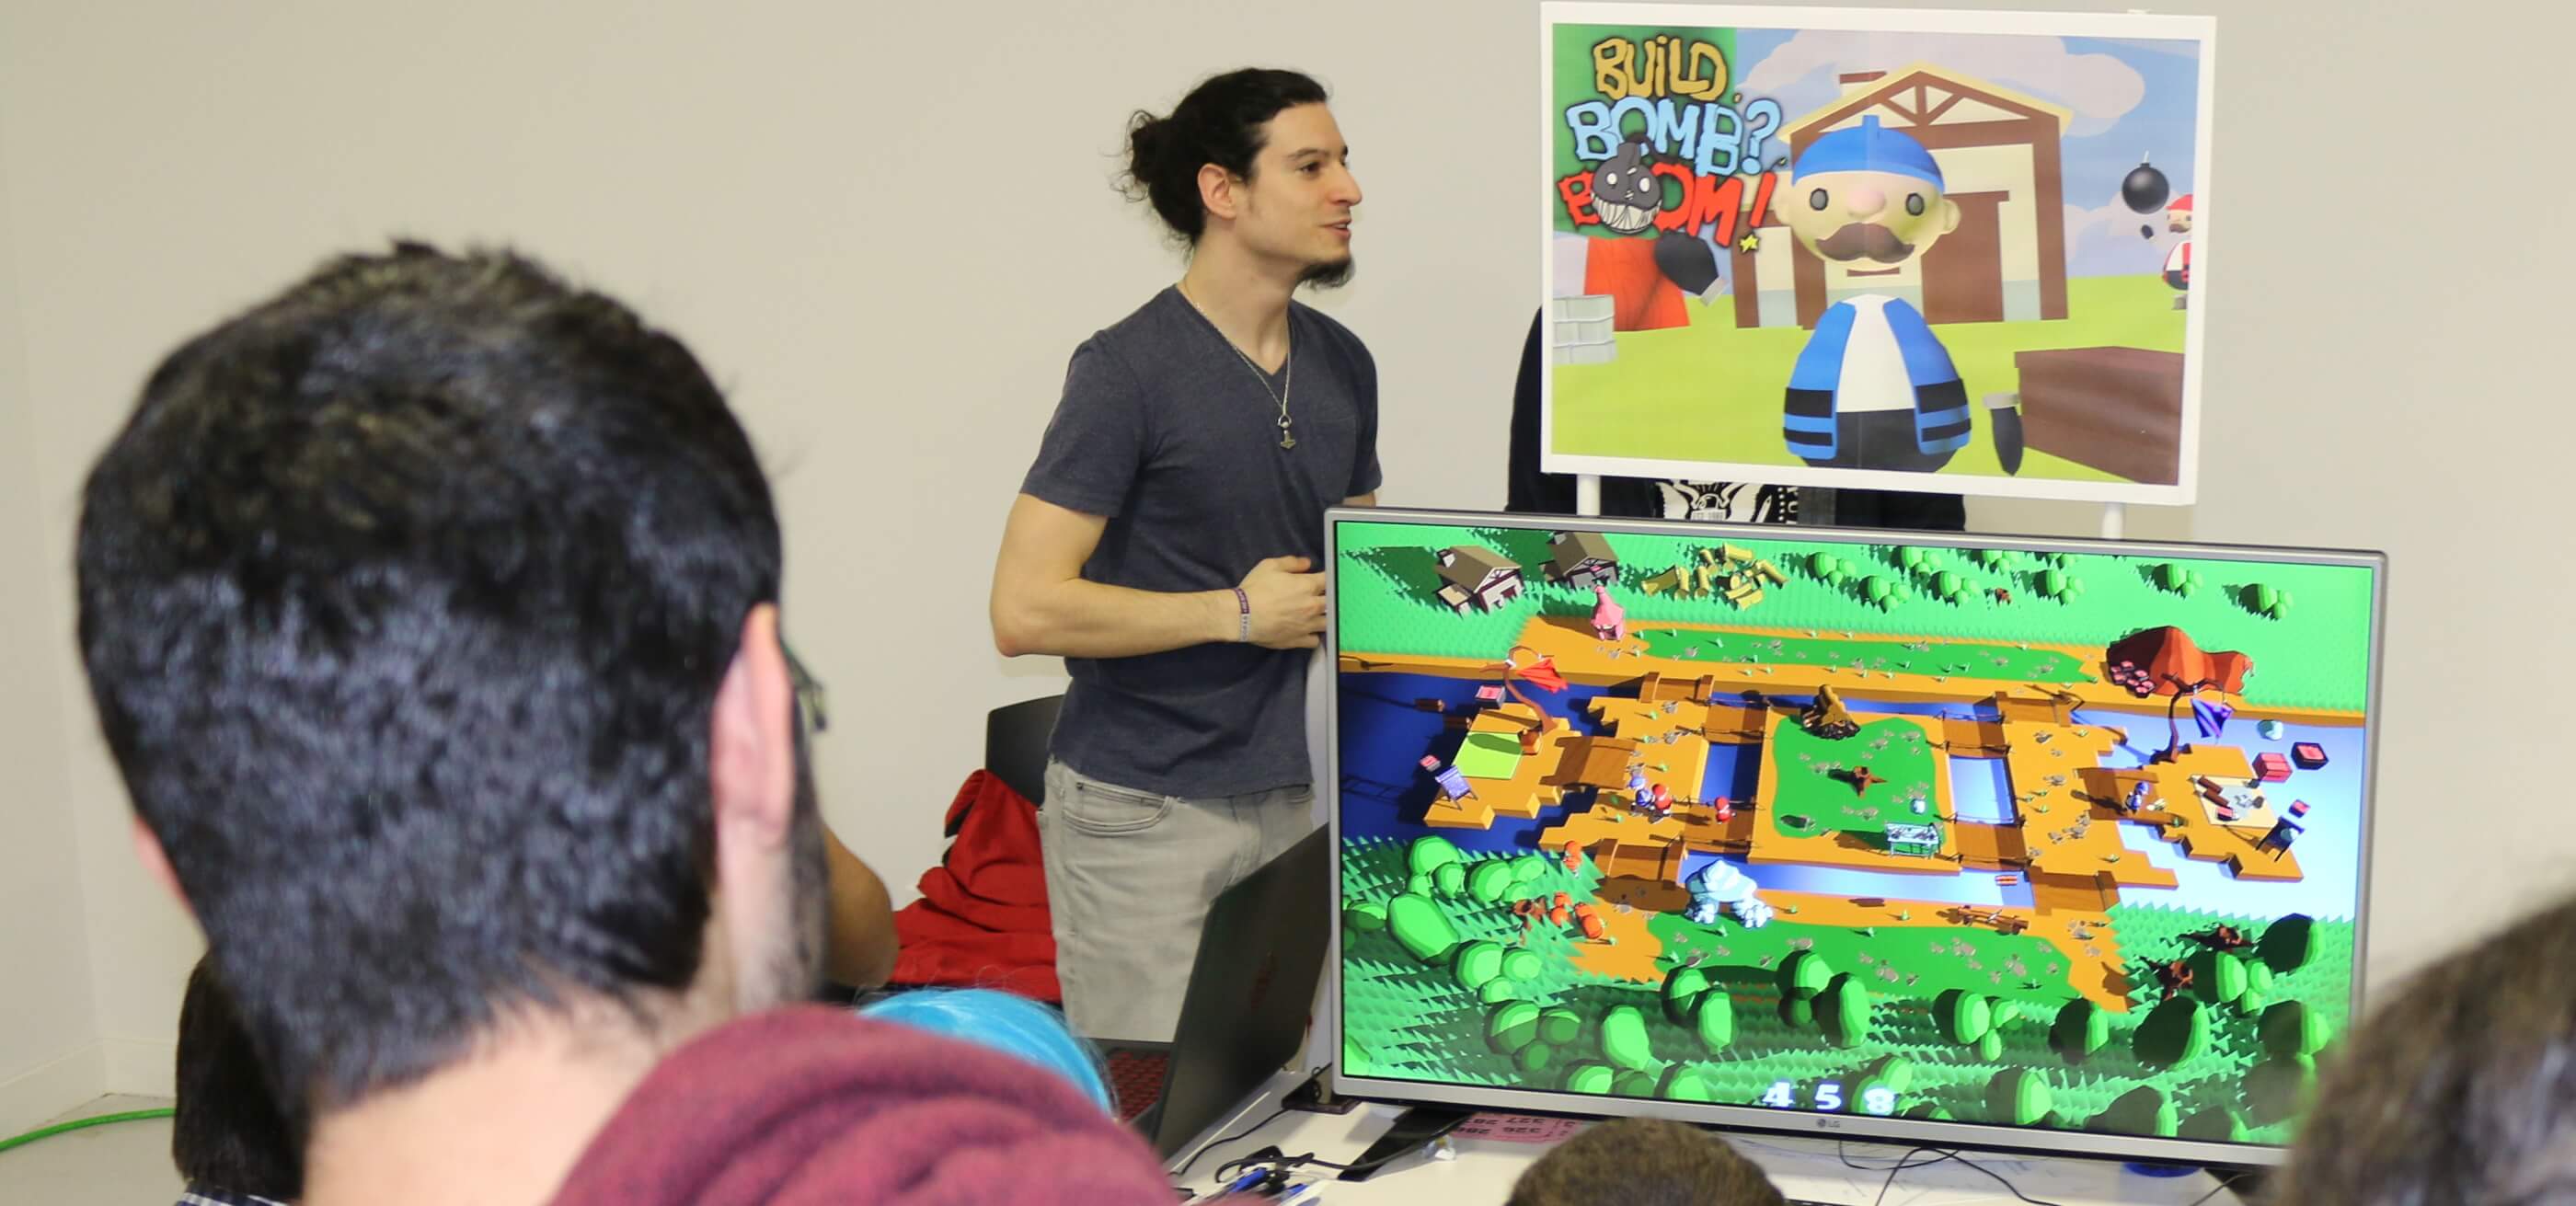 Un estudiante de DigiPen Bilbao se encuentra junto a un televisor que reproduce un juego de estudiantes en pantalla